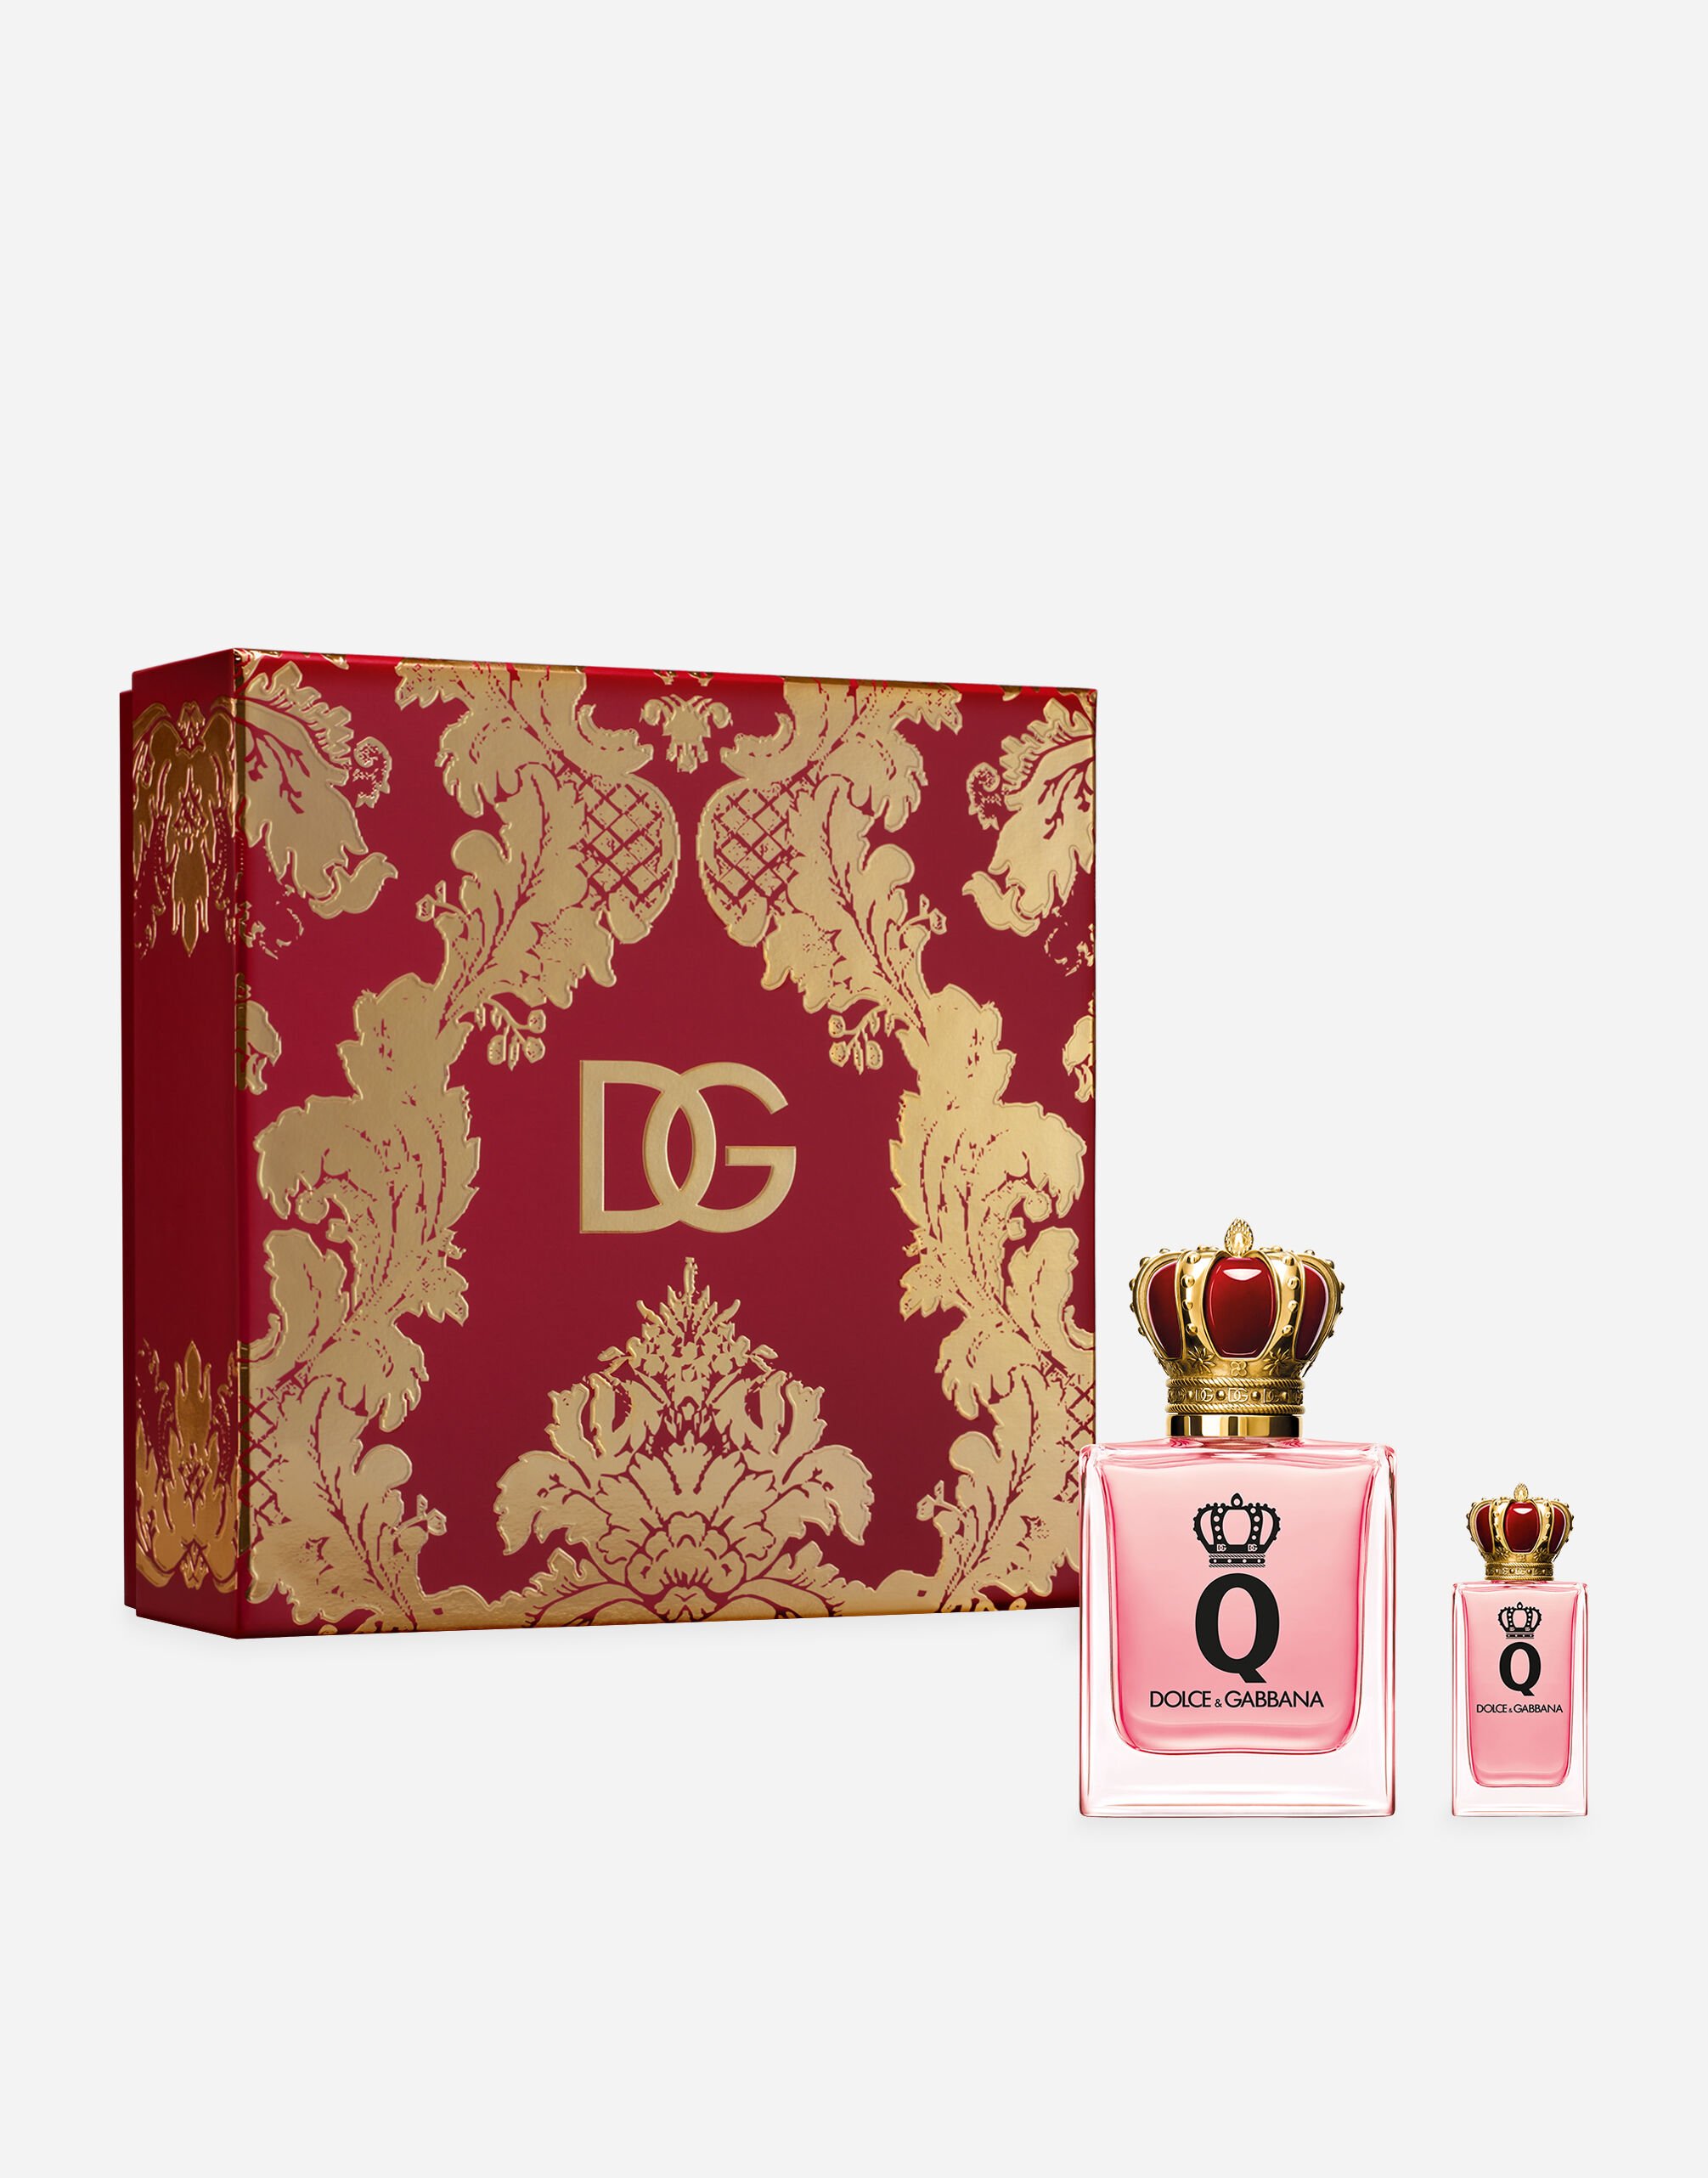 Dolce & Gabbana Exklusive Geschenkbox Q by Dolce&Gabbana Eau de Parfum - VT00H6VT000